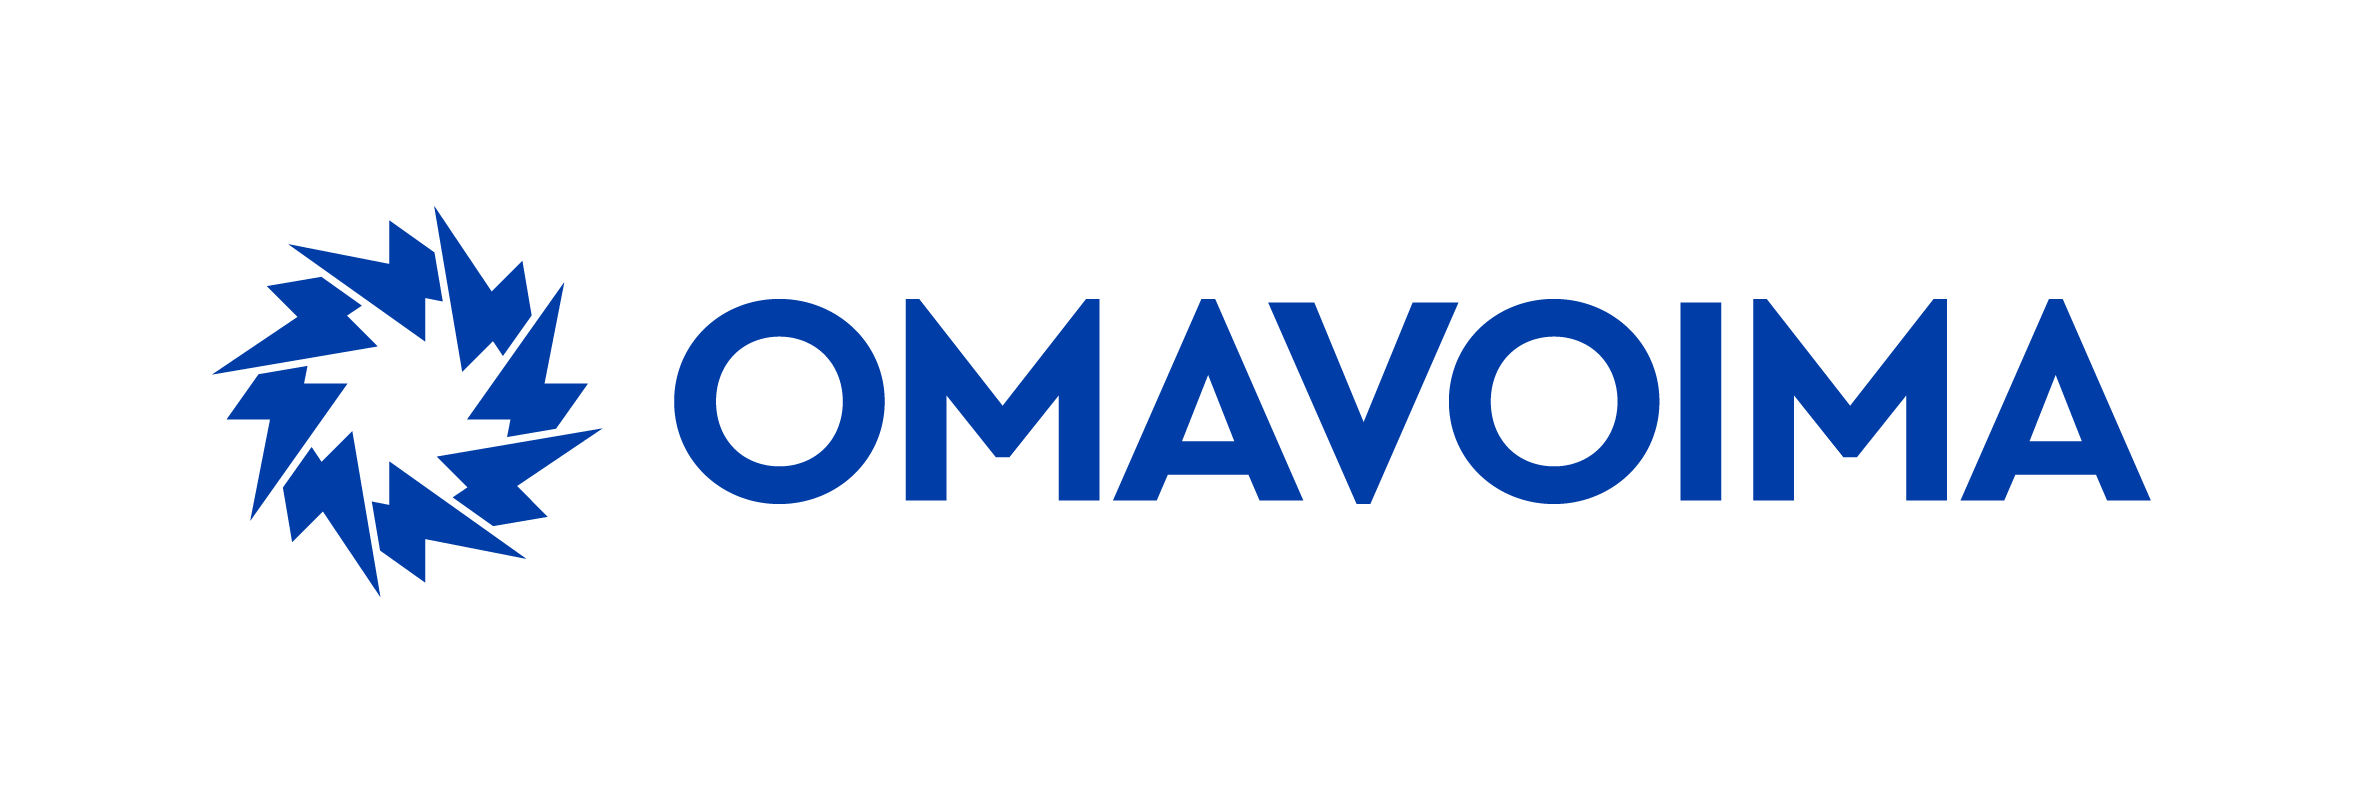 The company logo of Omavoima.